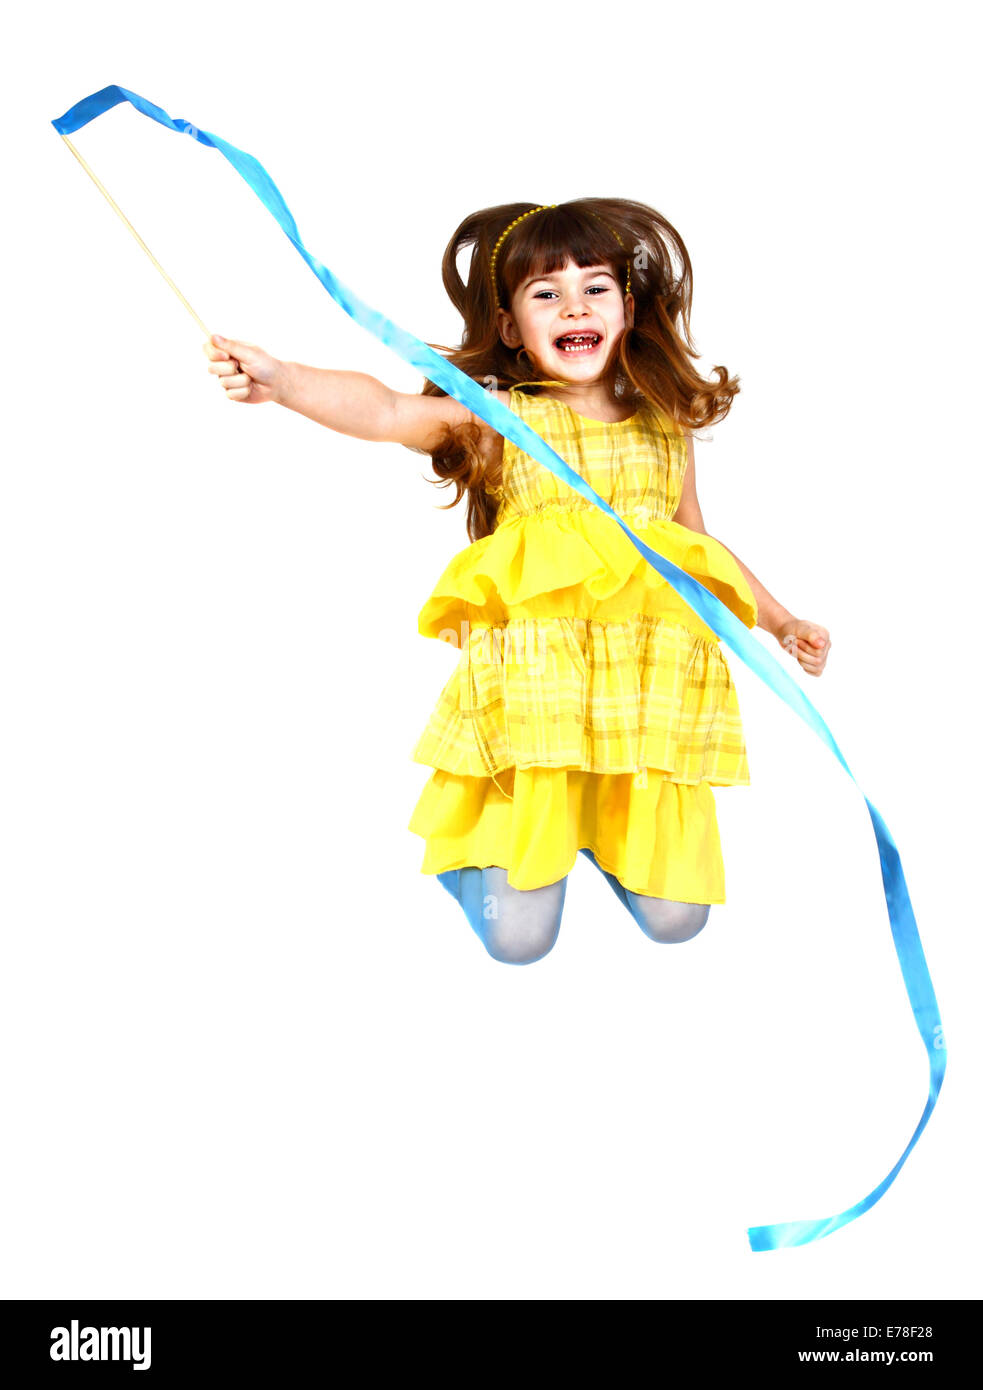 Kleines Mädchen im gelben Kleid springt mit blauem Band in der hand. Isoliert auf weißem Hintergrund Stockfoto